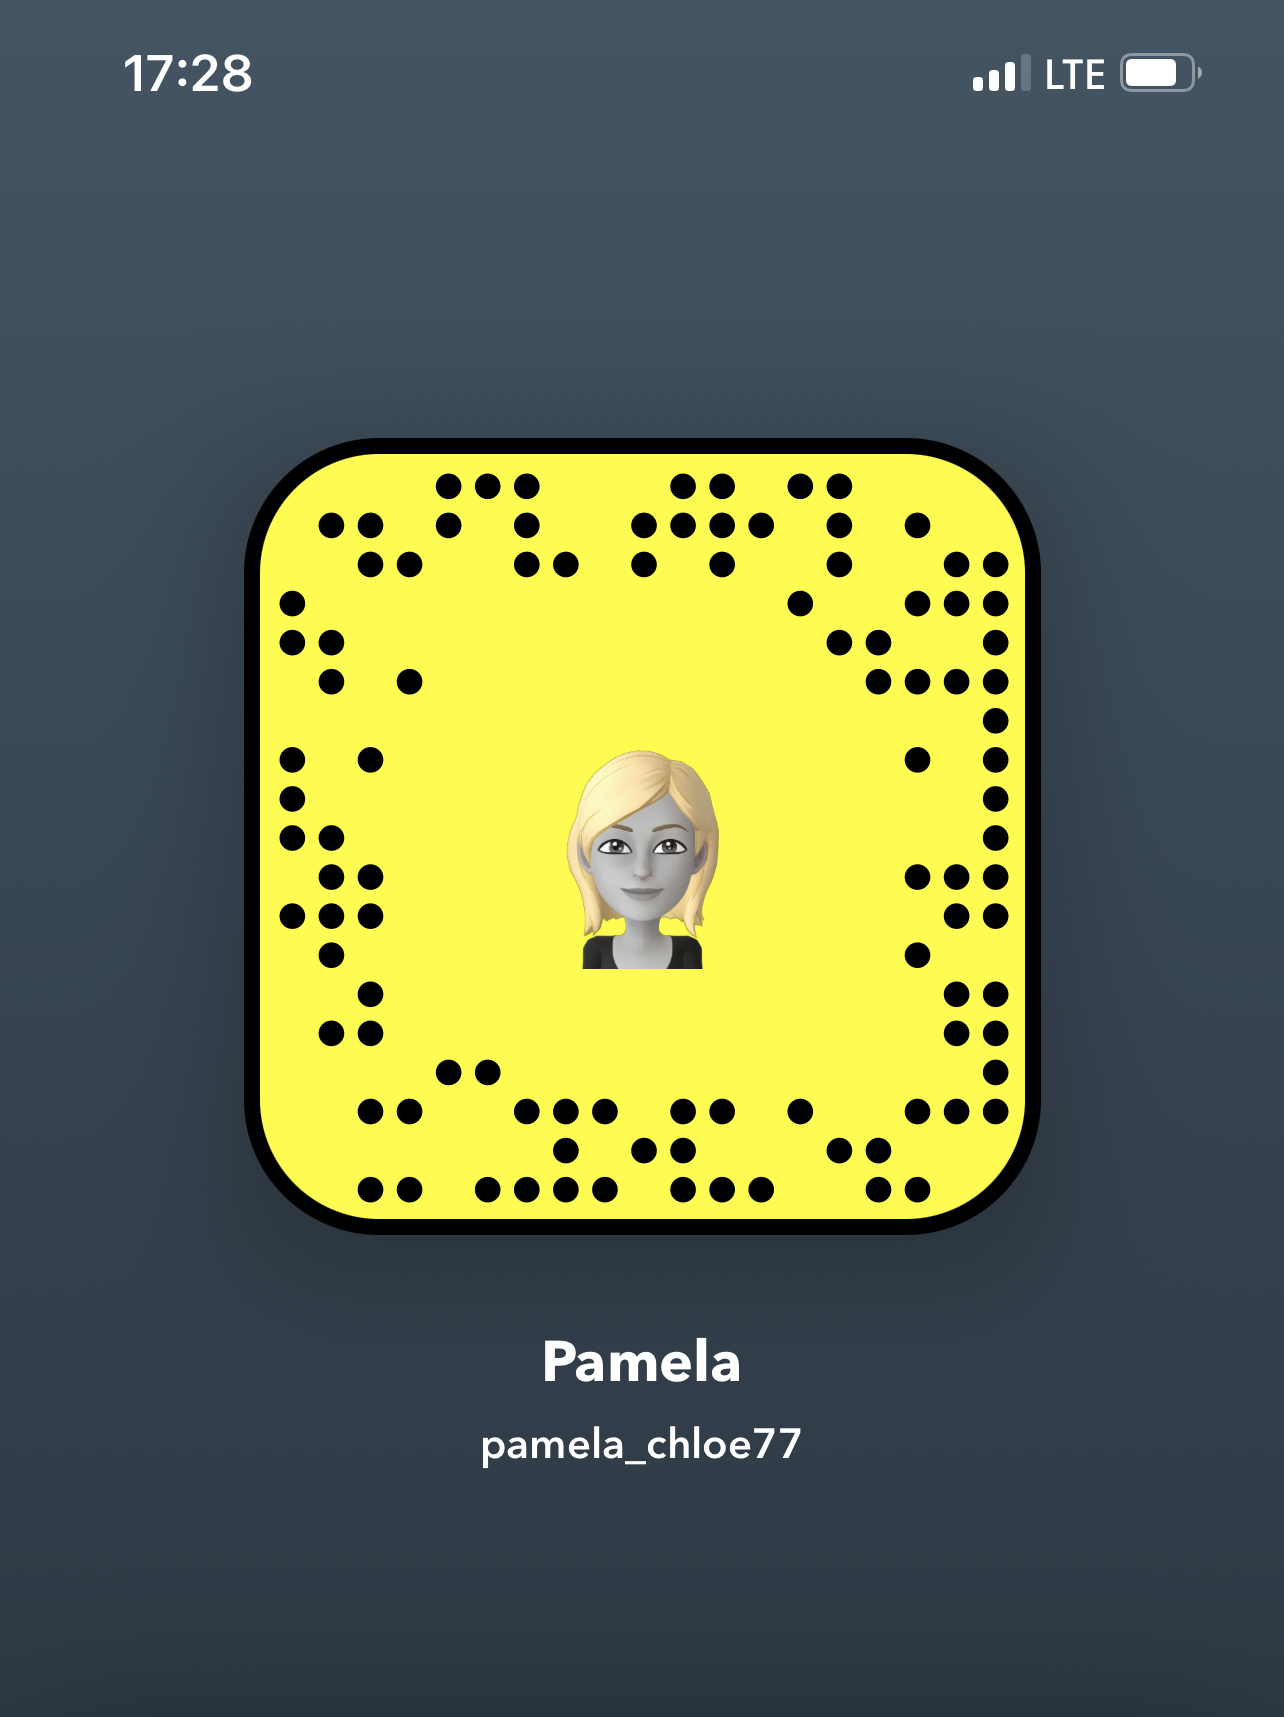 Pamela_chloe77